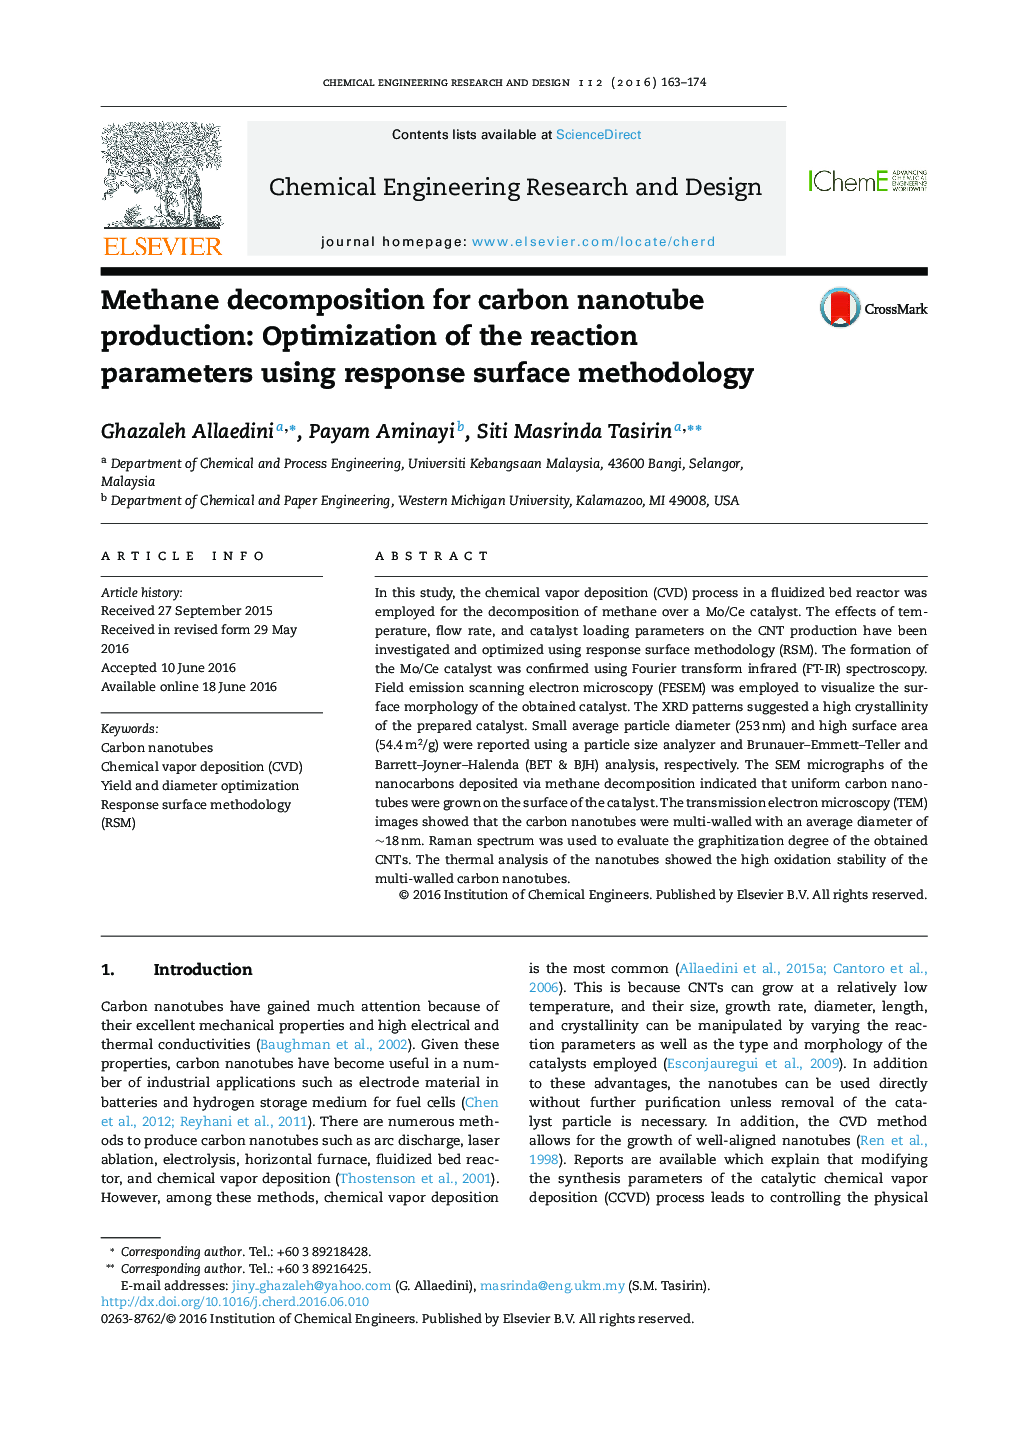 تجزیه متان برای تولید نانولوله های کربنی: بهینه سازی پارامترهای واکنش با استفاده از روش‌شناسی سطح واکنش